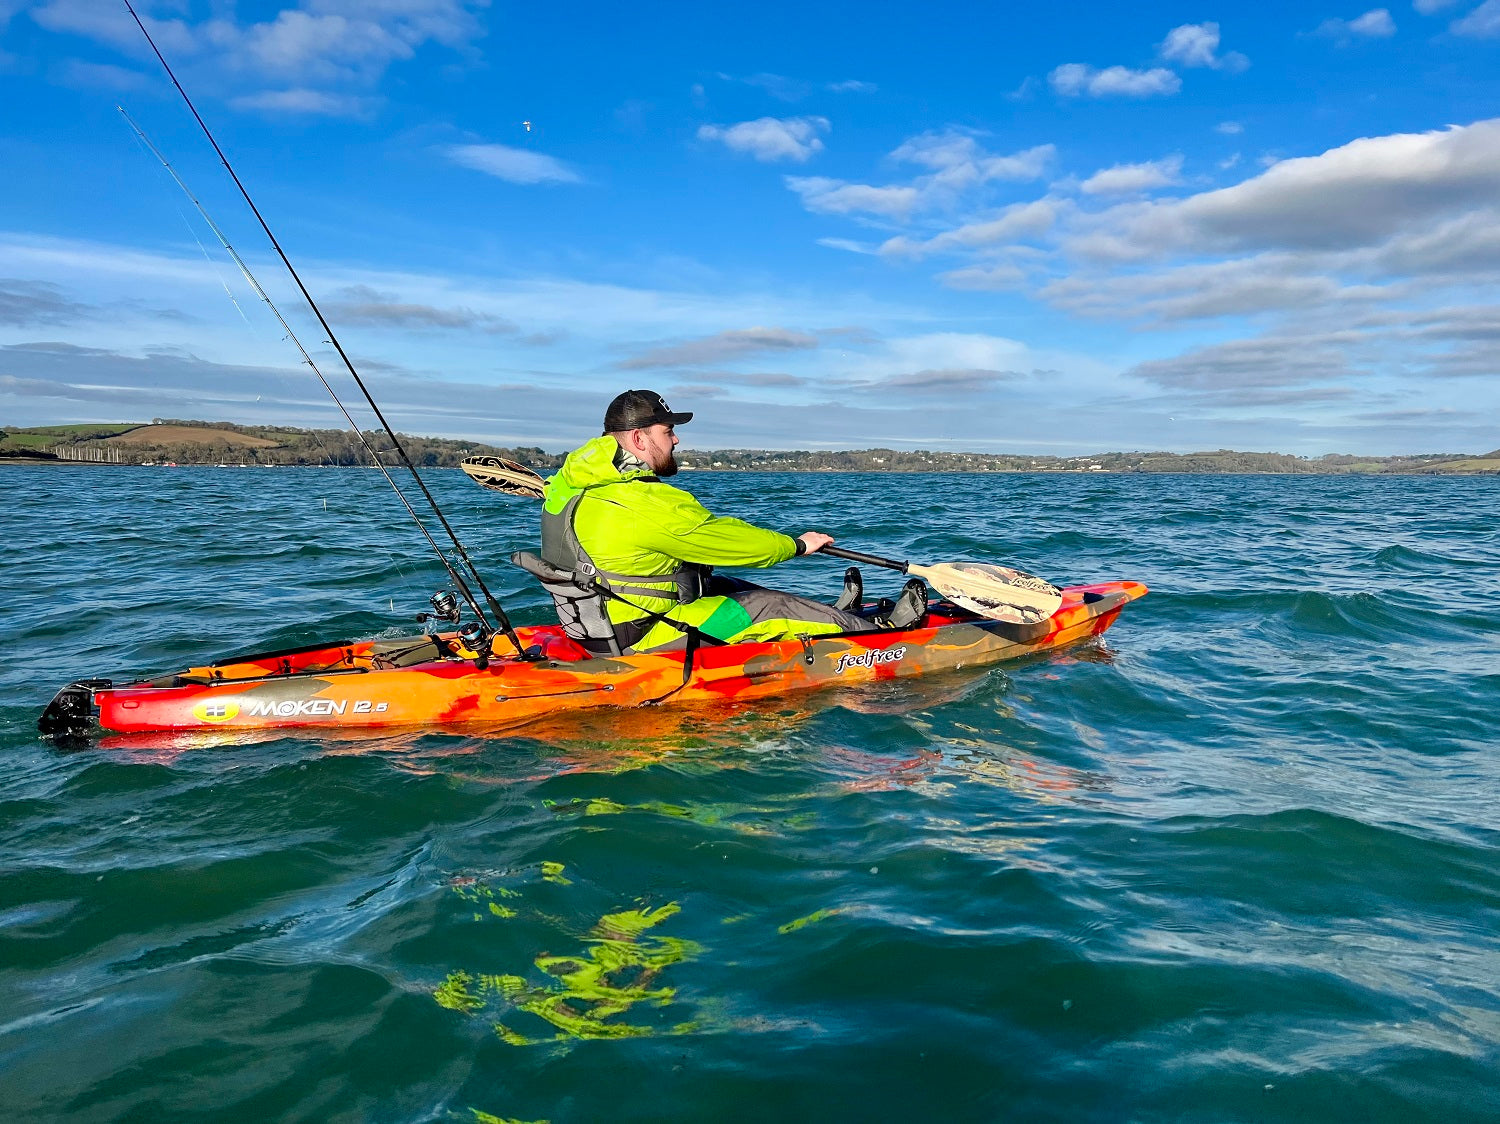 Paddling the Feelfree Moken 12.5 V2 kayak